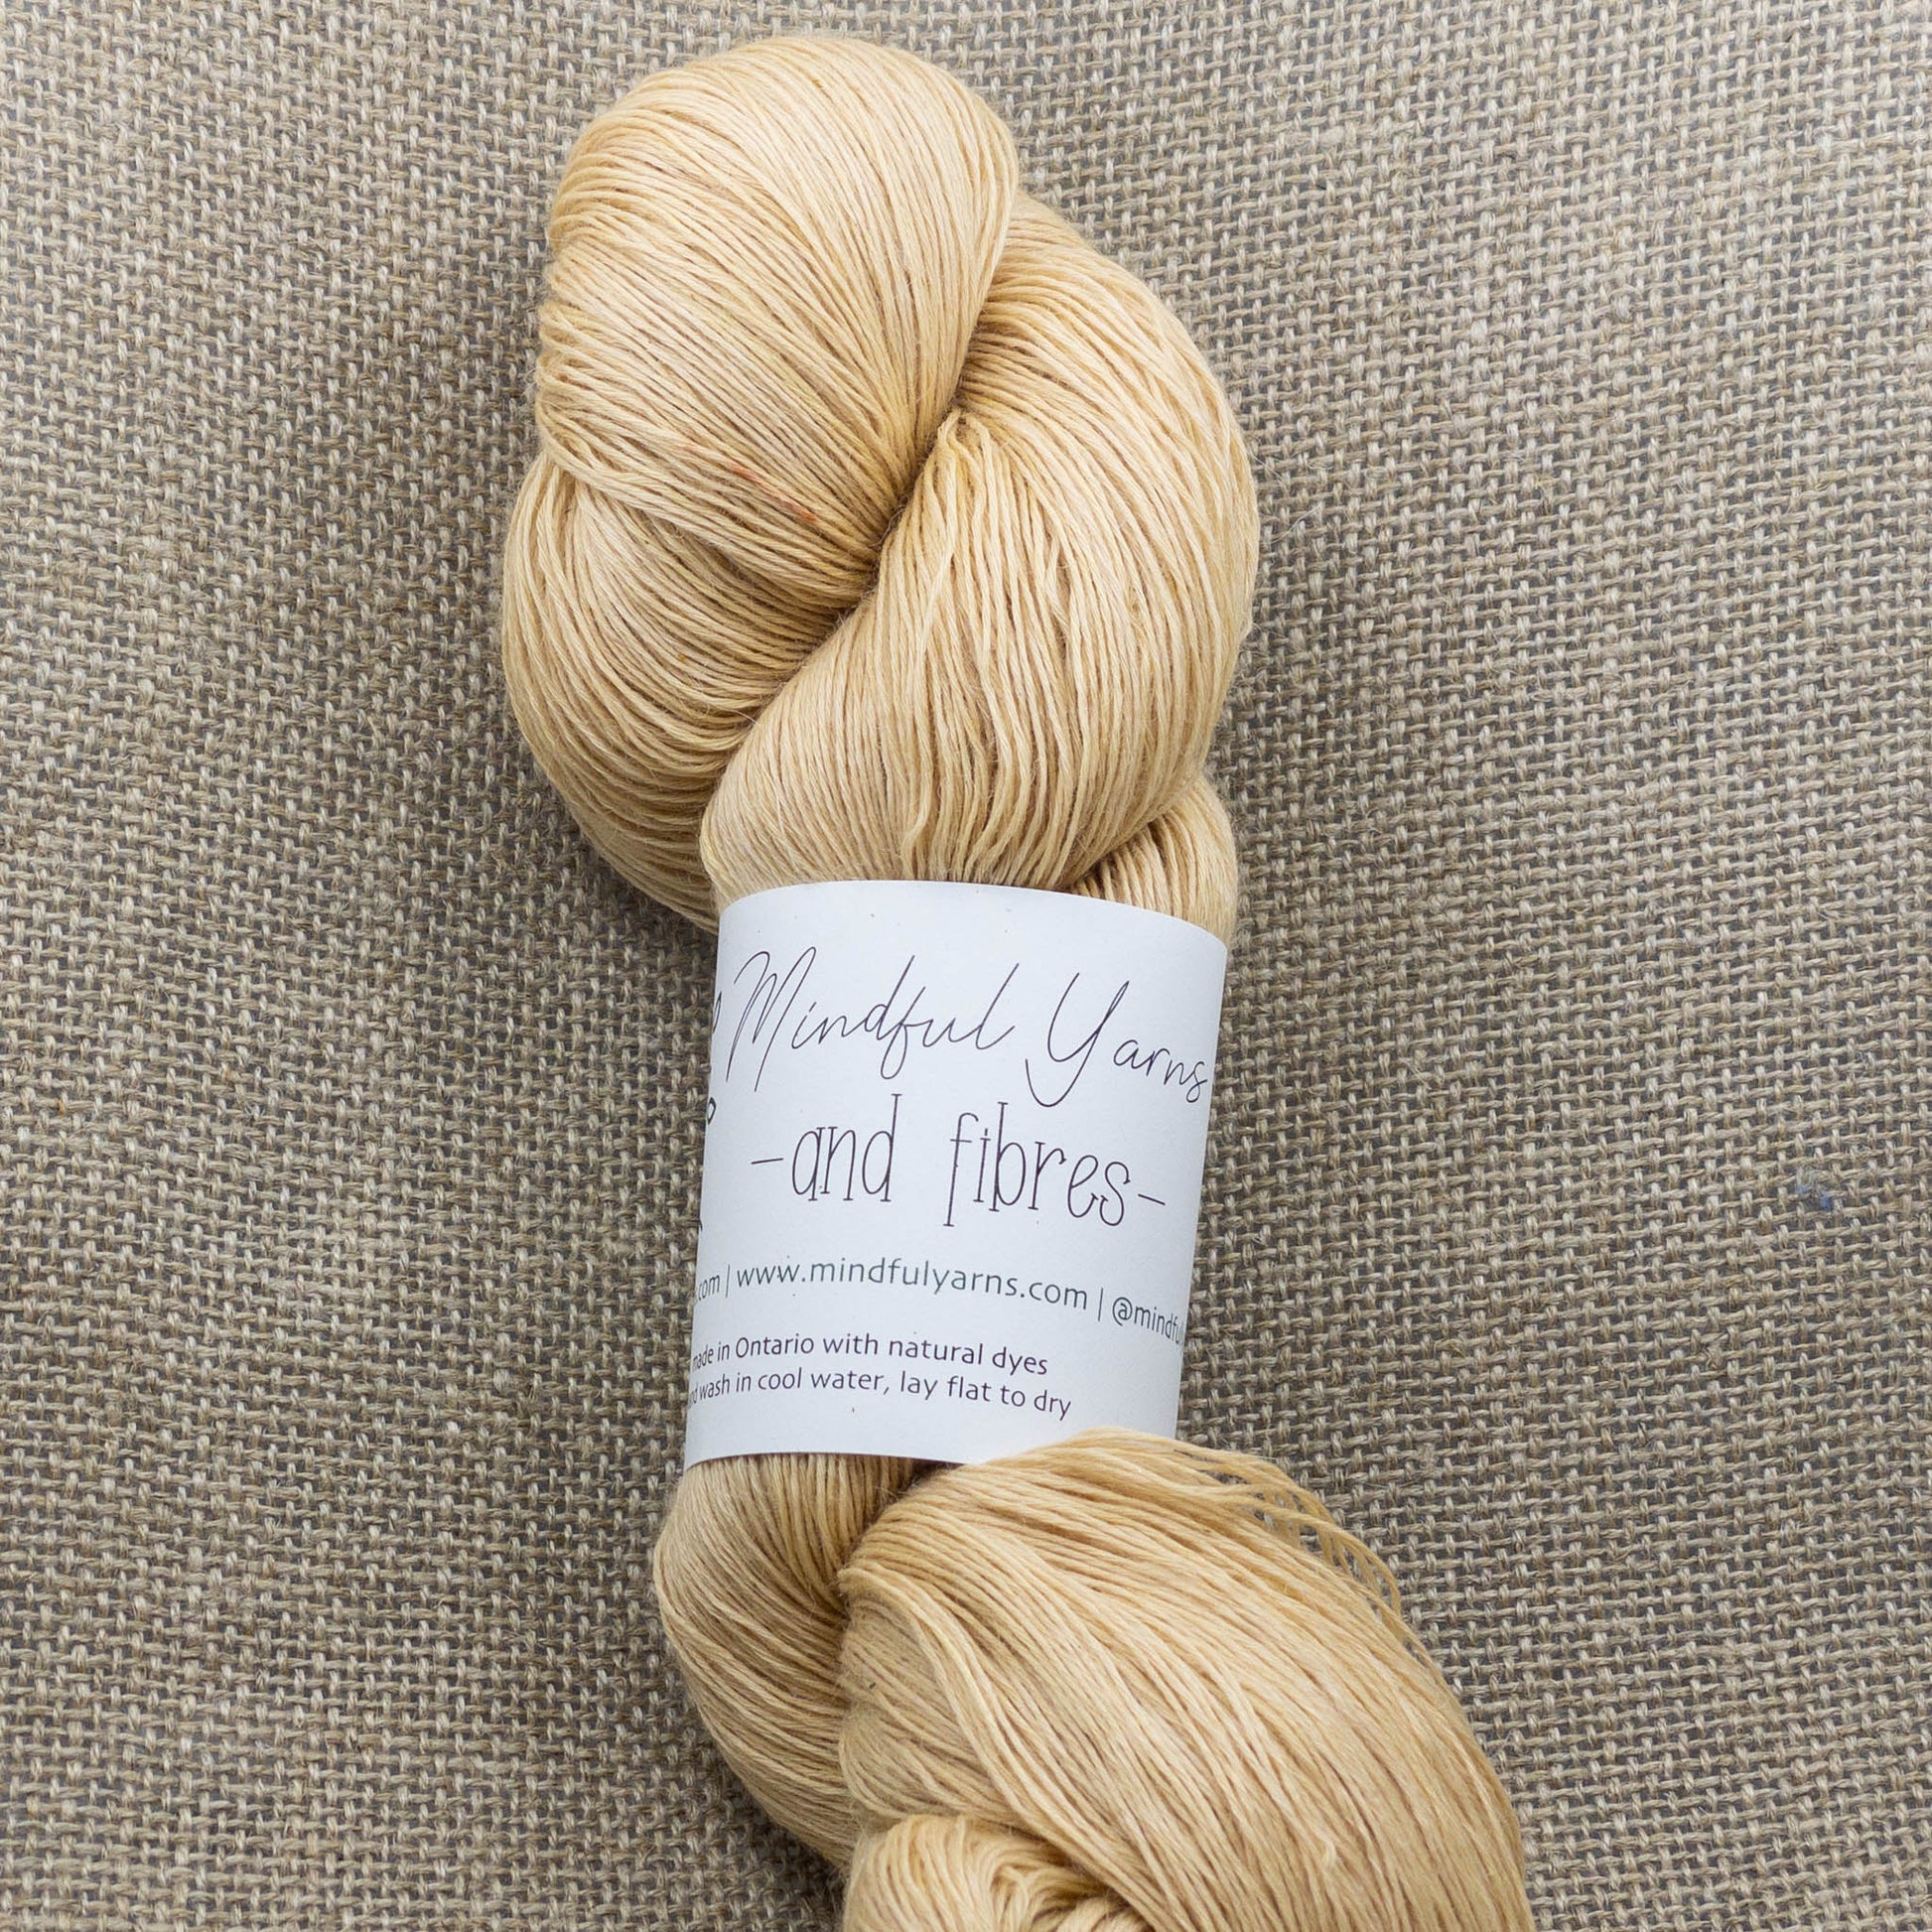 Alpaca Tencel Nylon Lace Weight Yarn - Mindful Yarns - Quebracho 0410